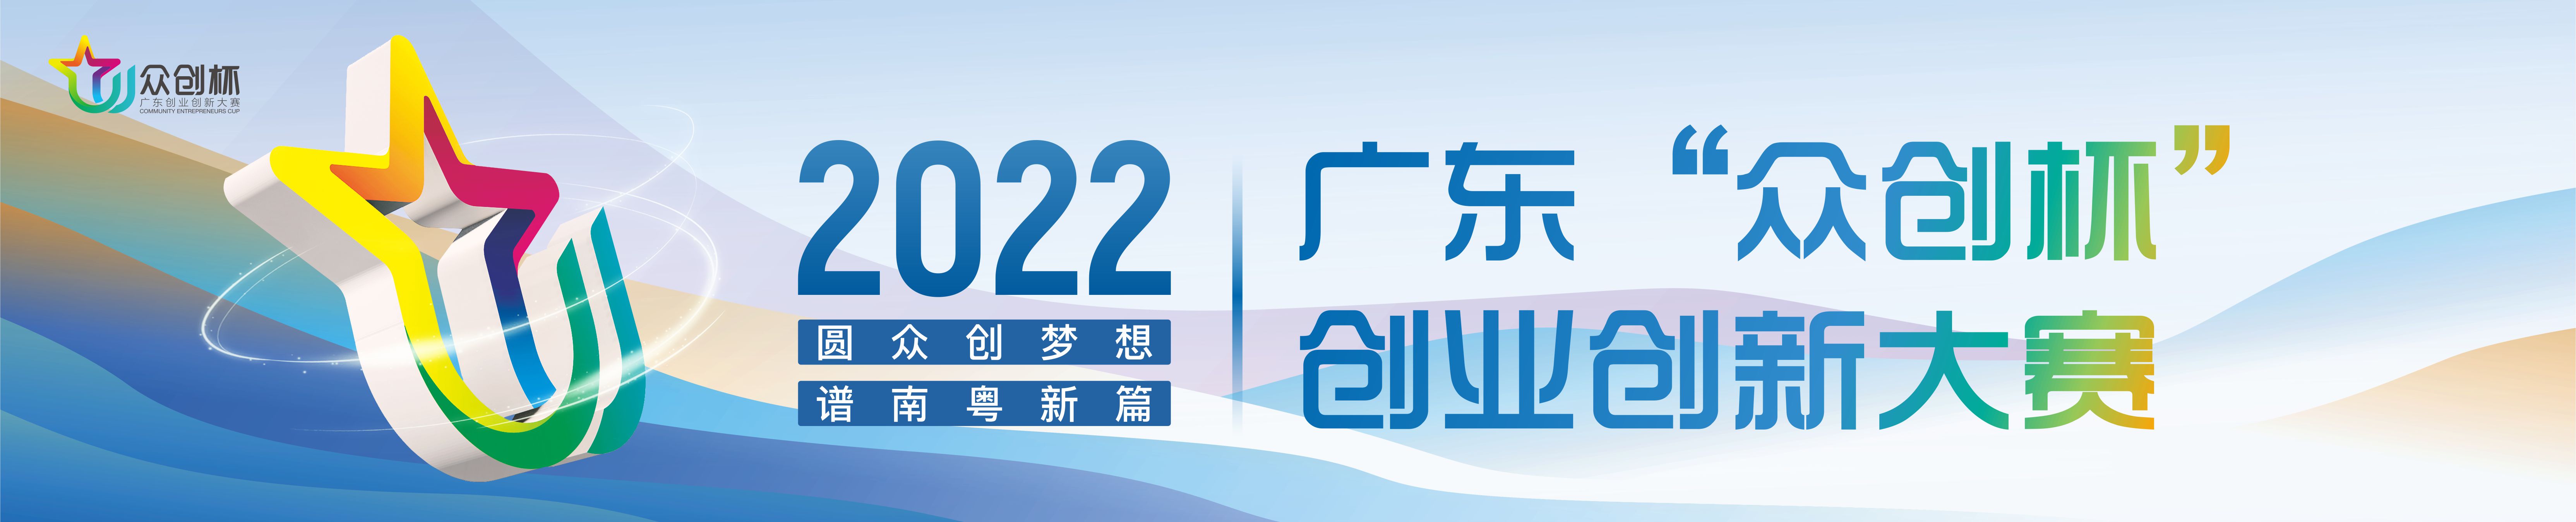 2022年广东“众创杯”创业创新大赛启动